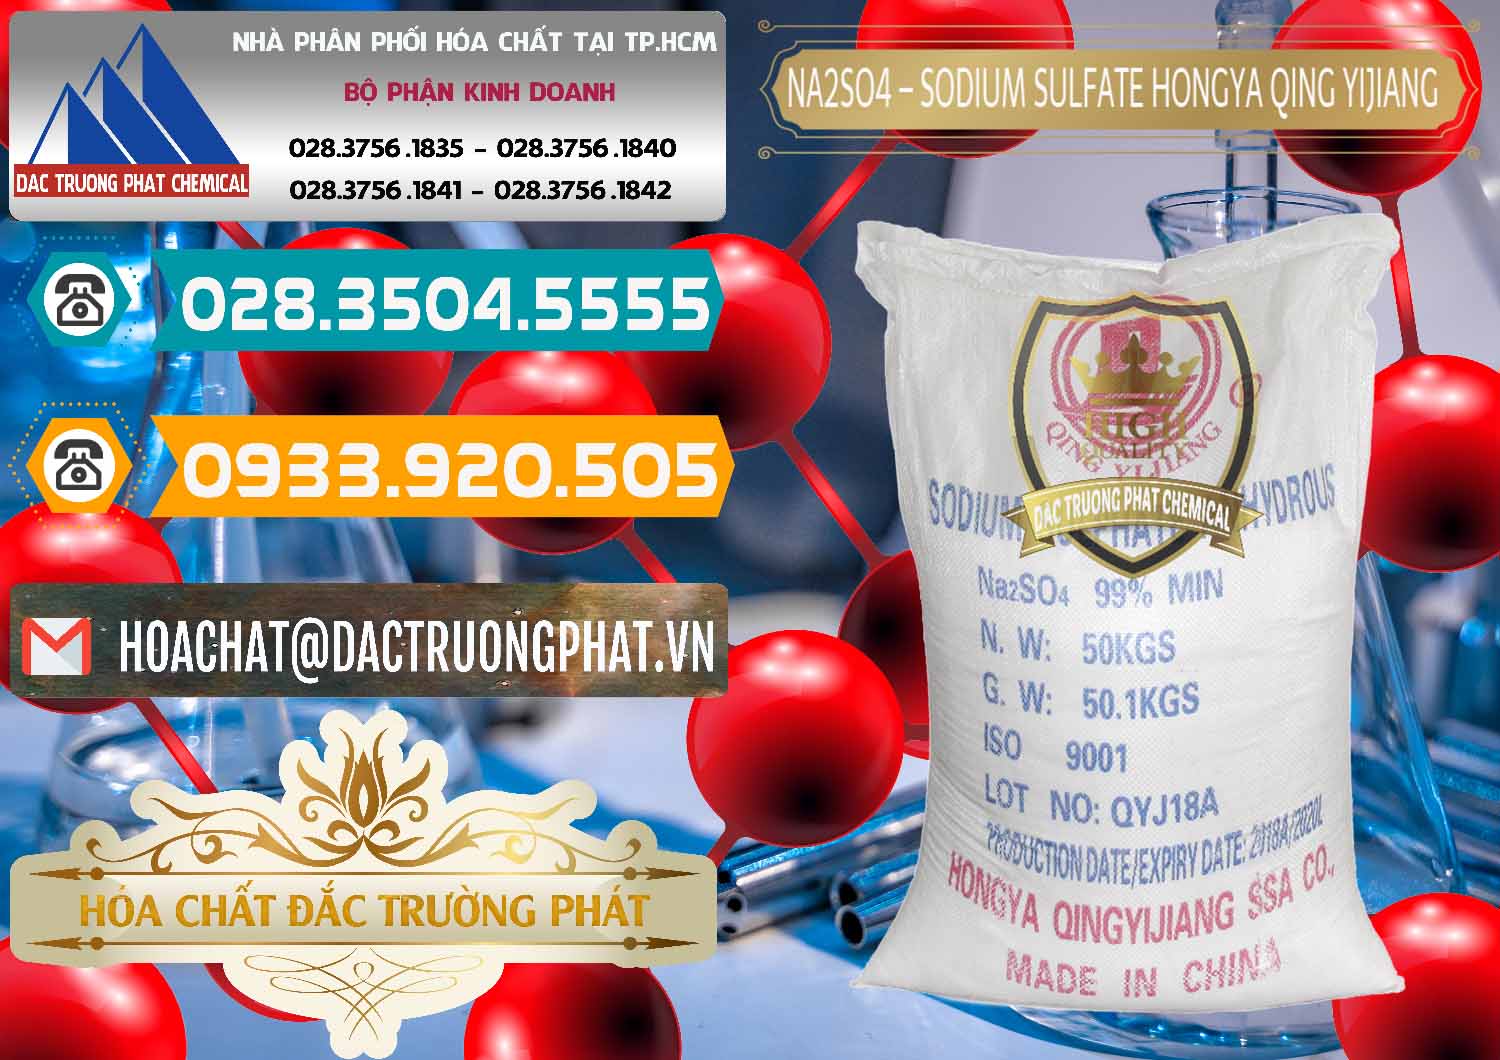 Phân phối - bán Sodium Sulphate - Muối Sunfat Na2SO4 Logo Cánh Bườm Hongya Qing Yi Trung Quốc China - 0098 - Chuyên nhập khẩu và cung cấp hóa chất tại TP.HCM - congtyhoachat.vn